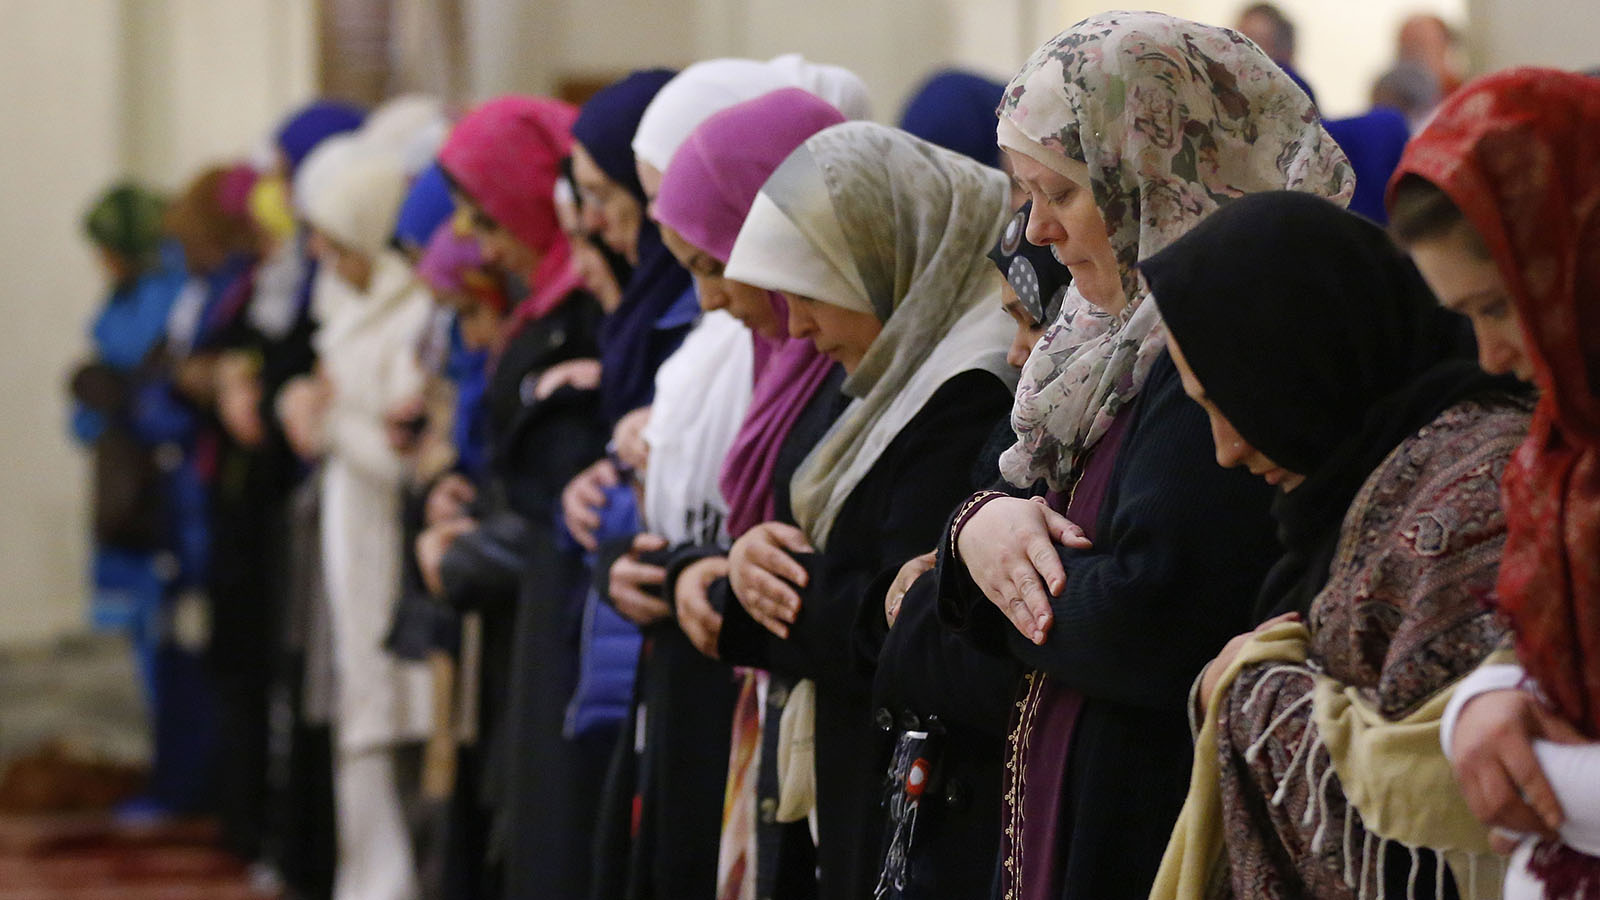 Shalat Tarawih di Masjid bagi Perempuan